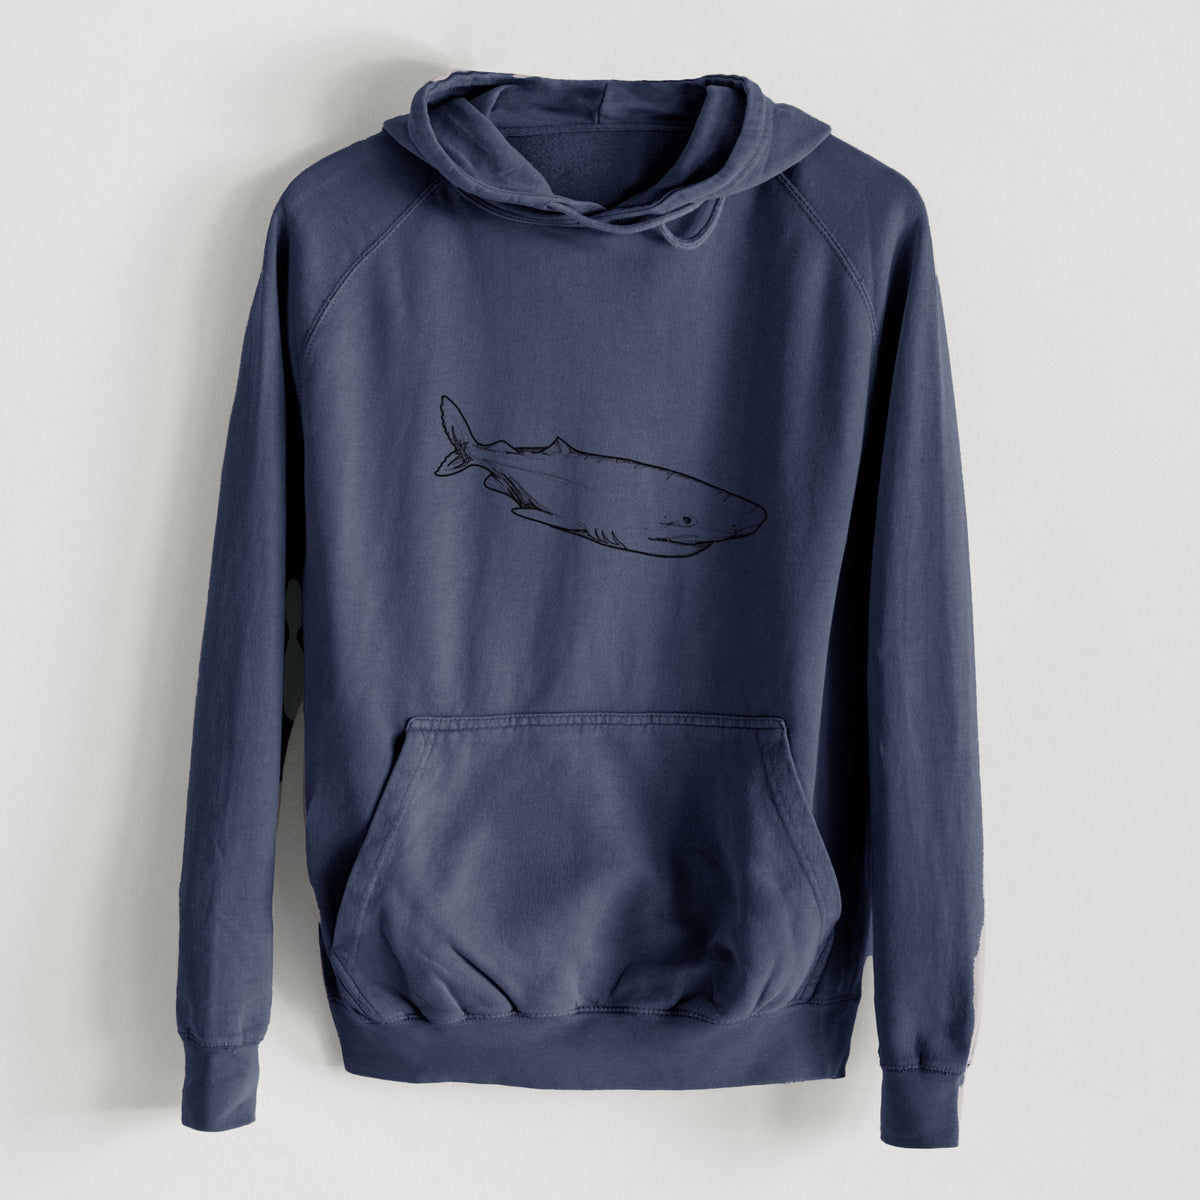 Greenland Shark  - Mid-Weight Unisex Vintage 100% Cotton Hoodie